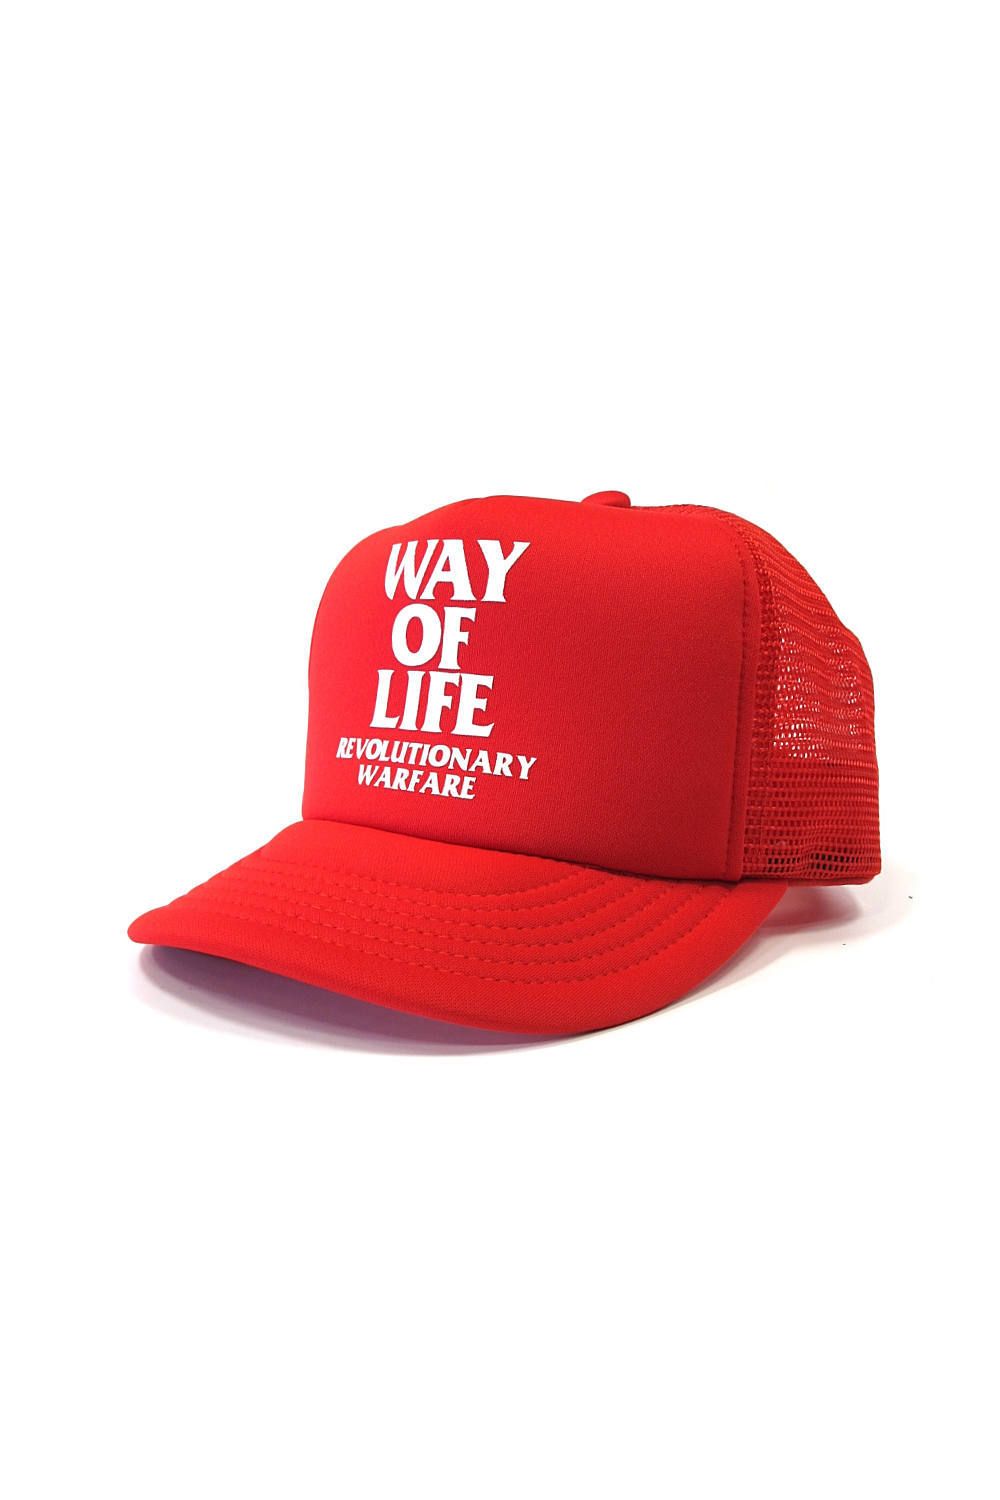 RATS - WAY OF LIFE MESH CAP (RED) / 定番人気ロゴ メッシュ